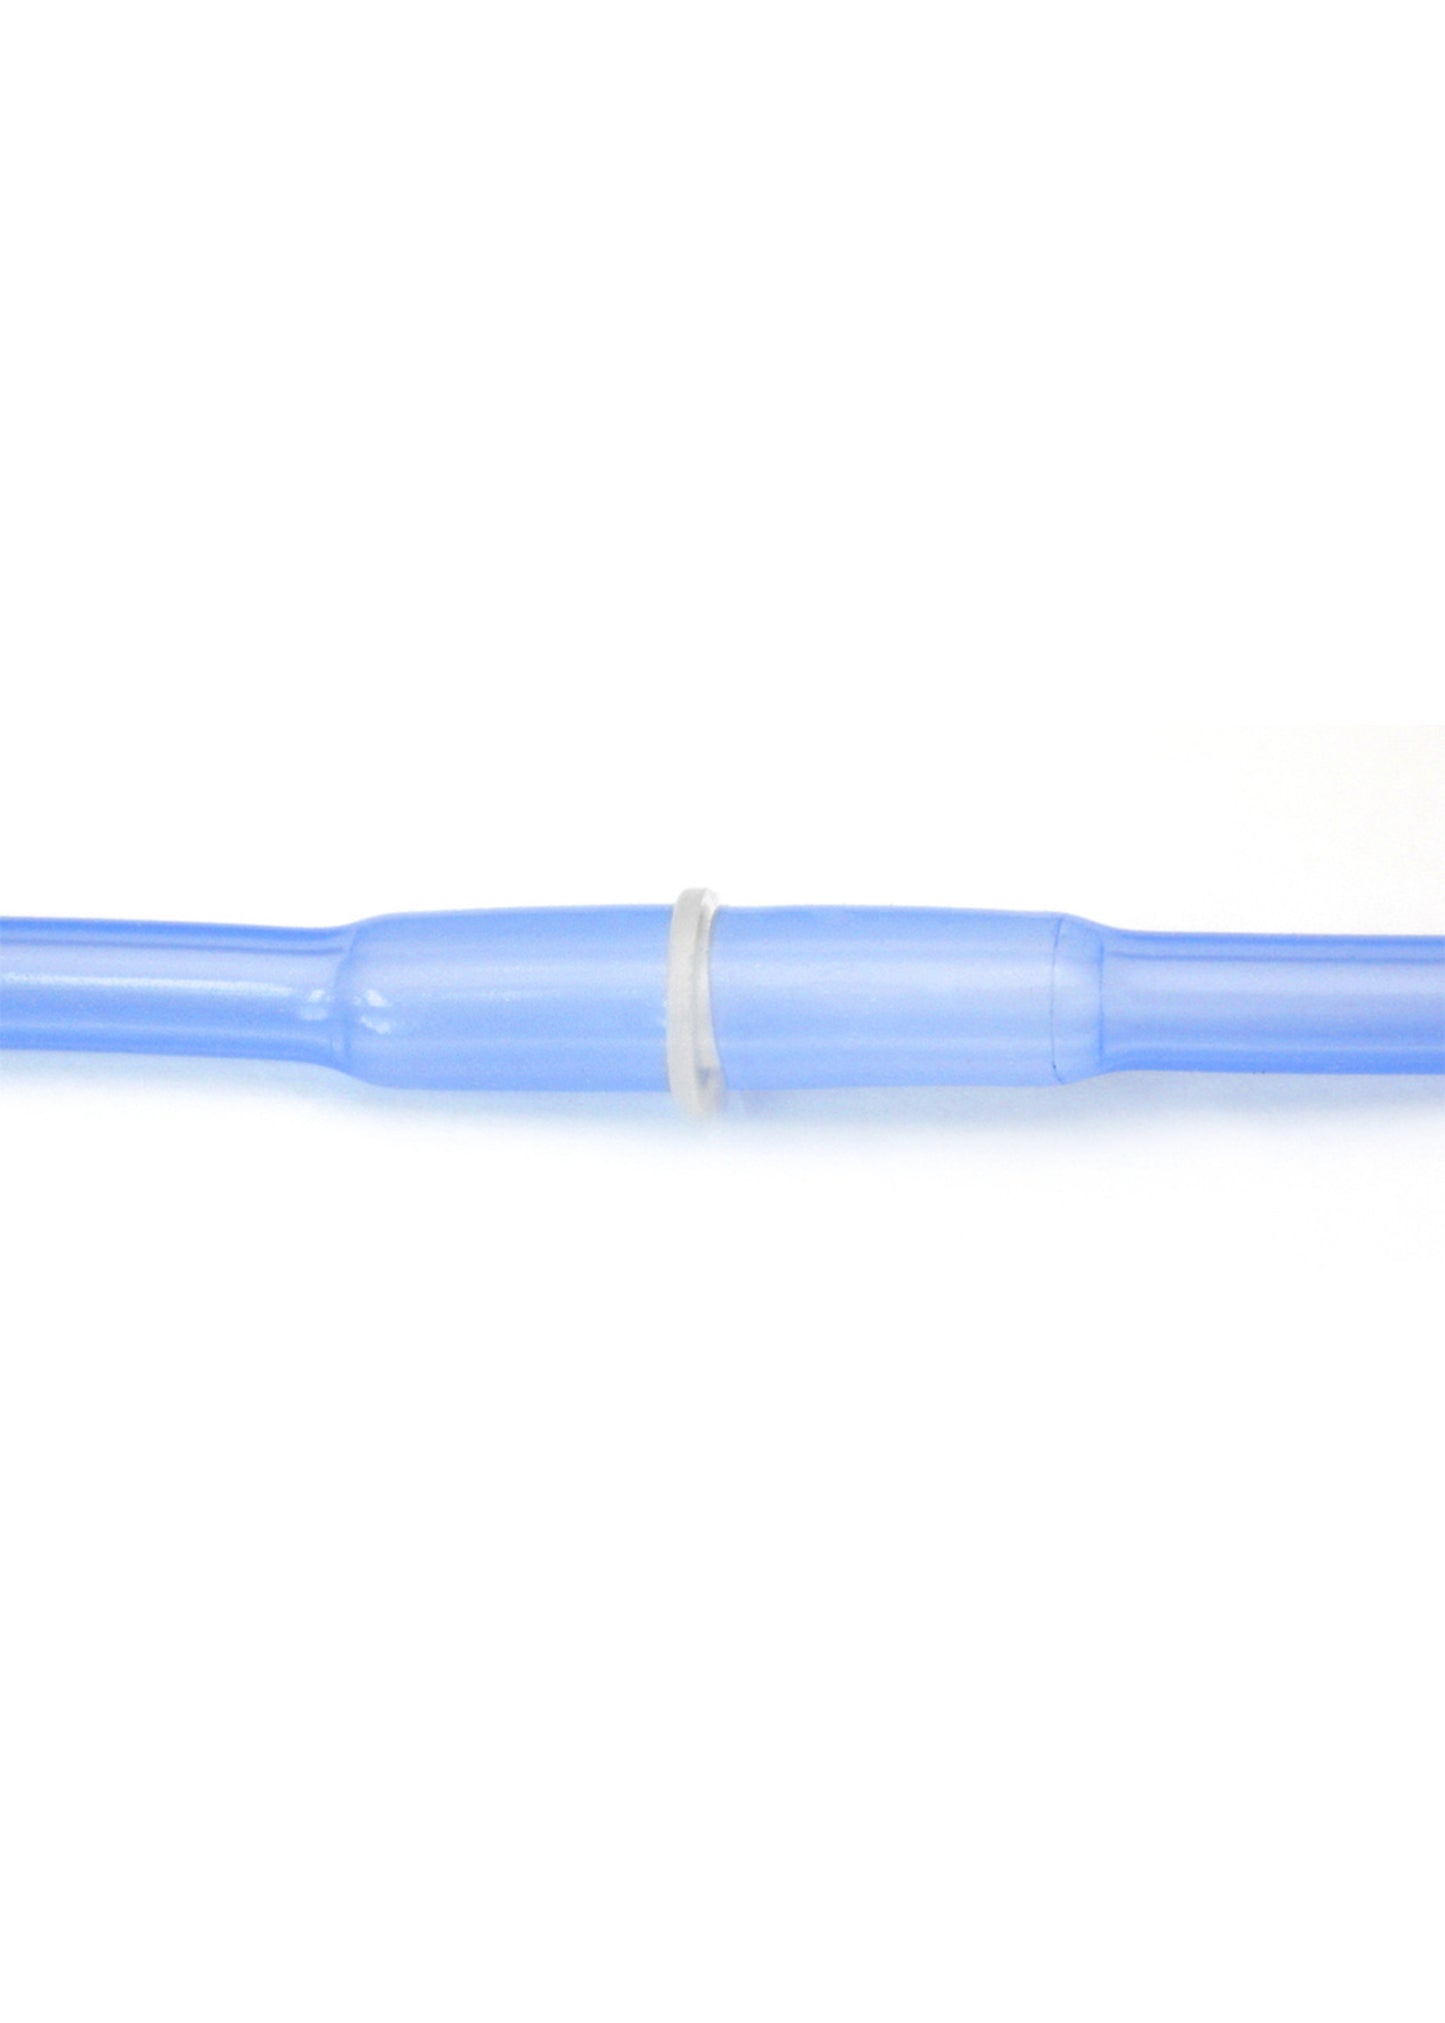 EZO-PMP™ Basic Tubing Kit